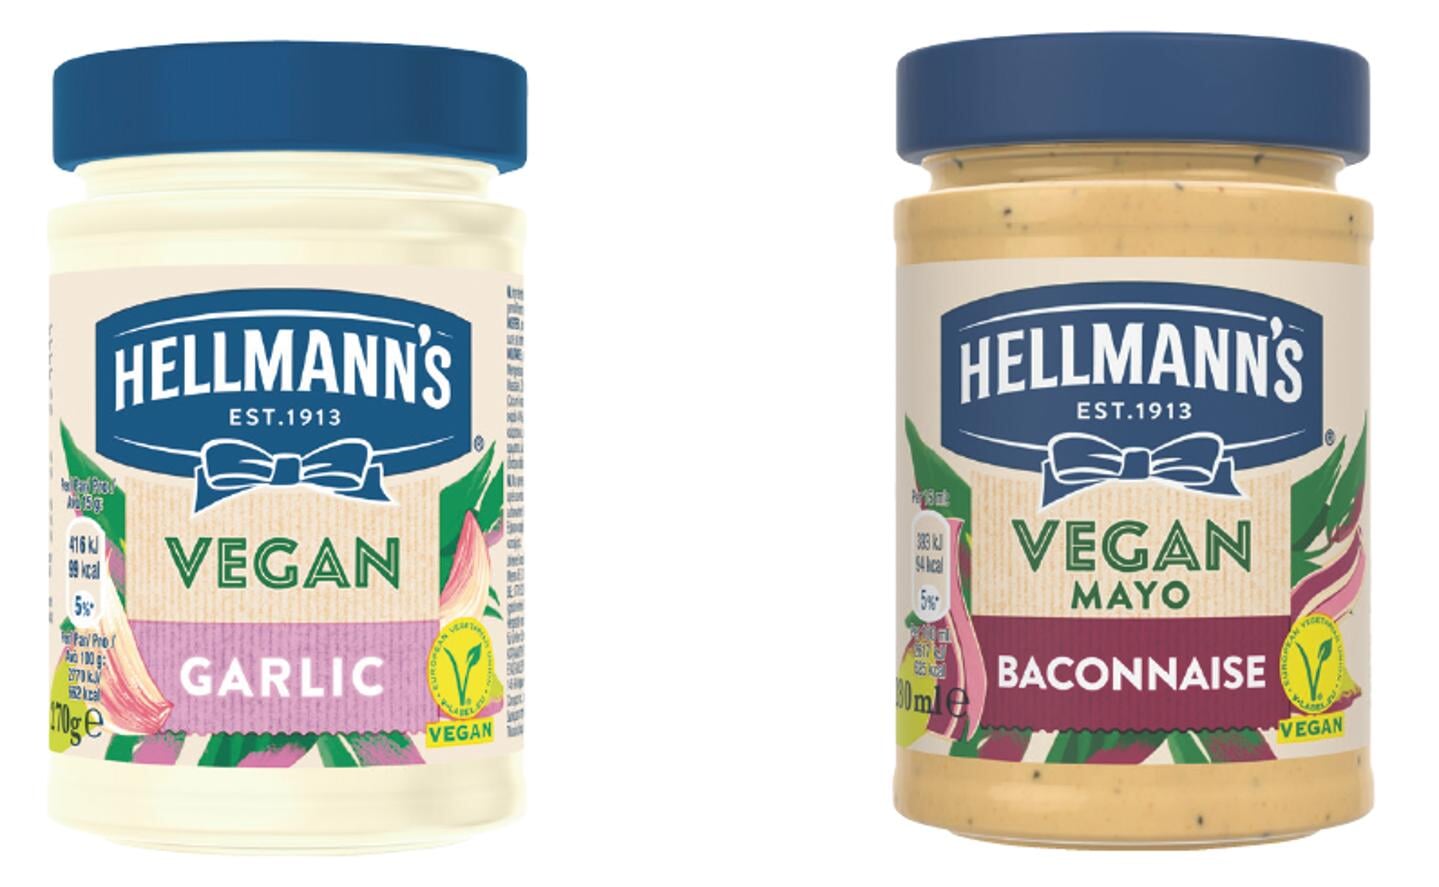 Steeds meer consumenten maken de transitie naar plantaardig, zeker binnen de doelgroep van Hellmann’s. Het merk loopt voorop in vegan mayo’s en introduceerde onlangs twee nieuwe plantaardige mayonaises: Hellmann’s Vegan Mayo Garlic en Hellmann’s Vegan Mayo Baconnaise.